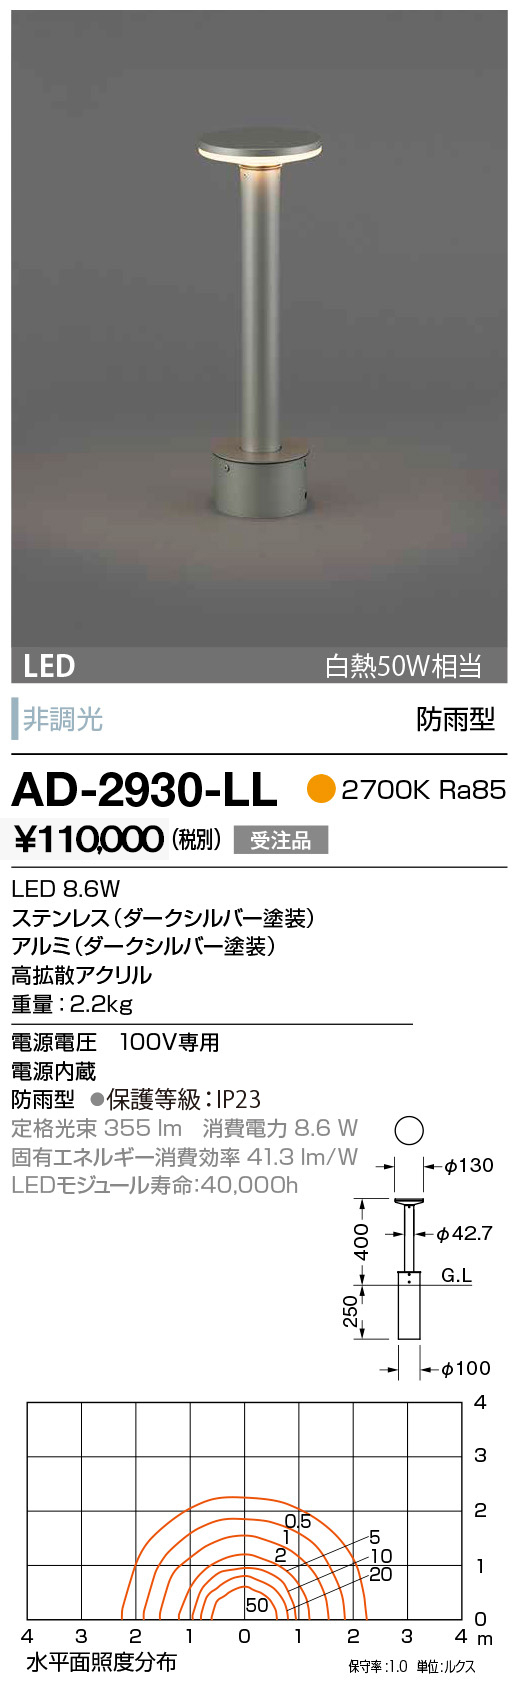 山田照明 AD-2930-LL 山田照明 ガーデンライト ダークシルバー LED